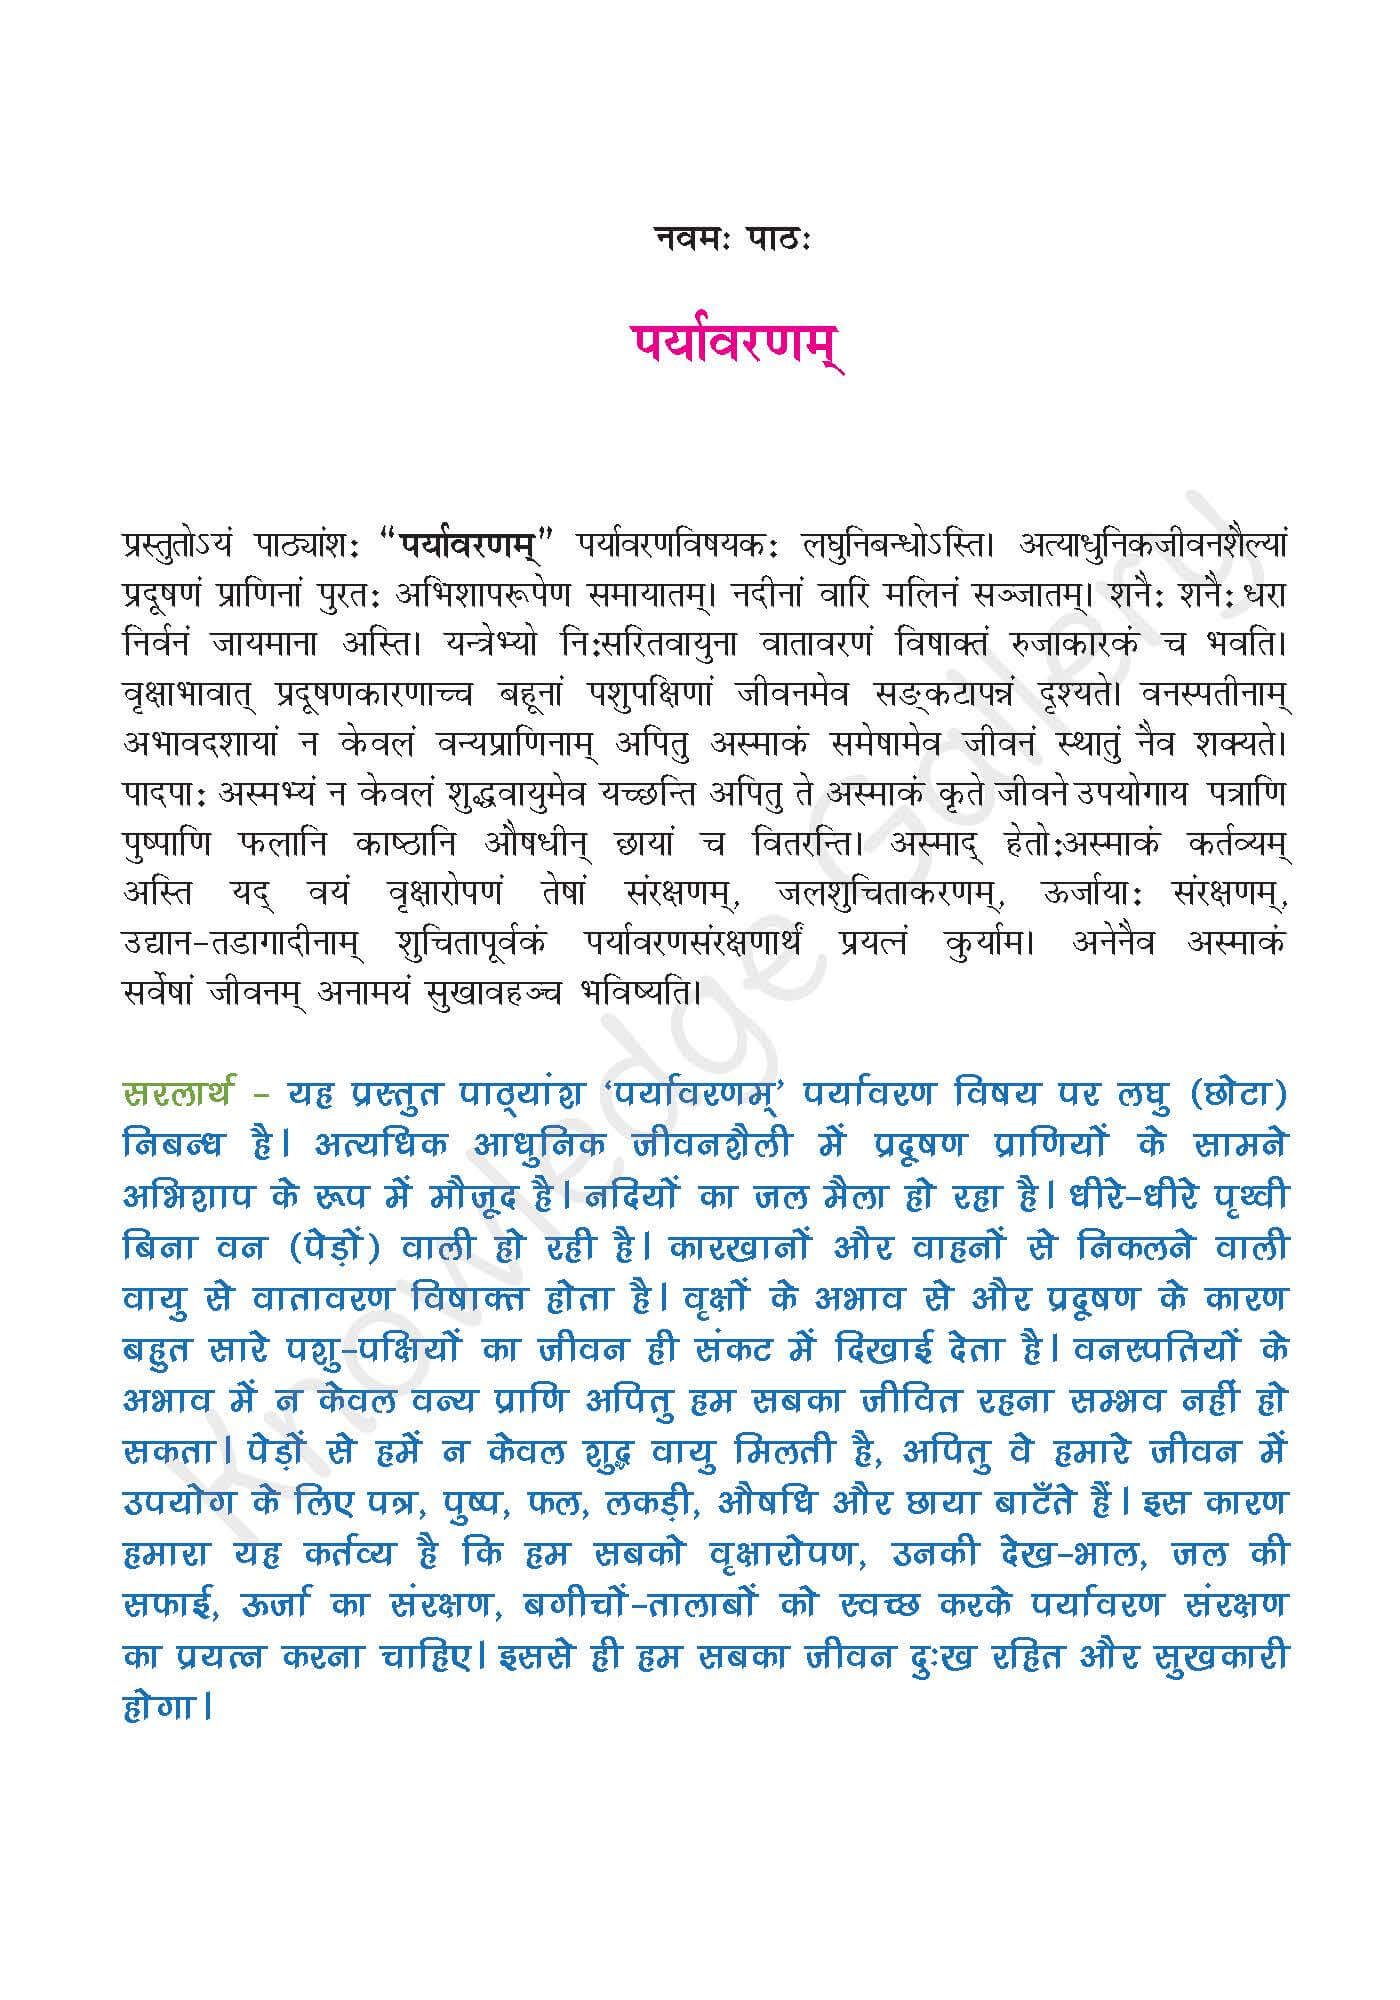 NCERT Solution For Class 9 Sanskrit Chapter 9 part 1